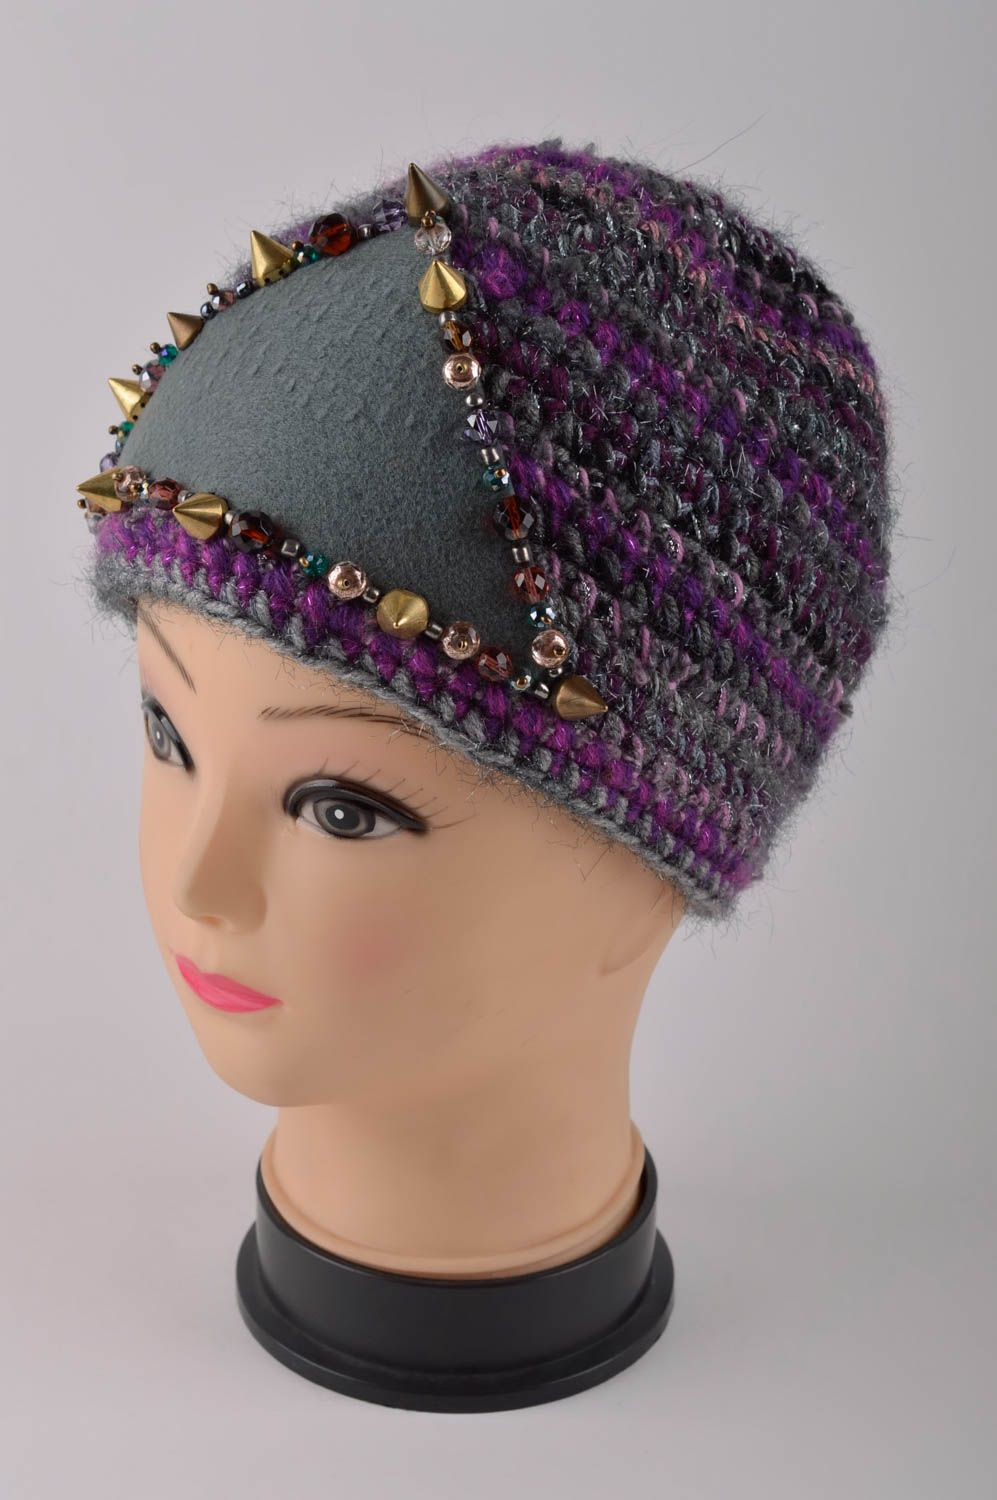 Handmade warm hat designer accessory for girls woolen hat warm hat unusual gift photo 2